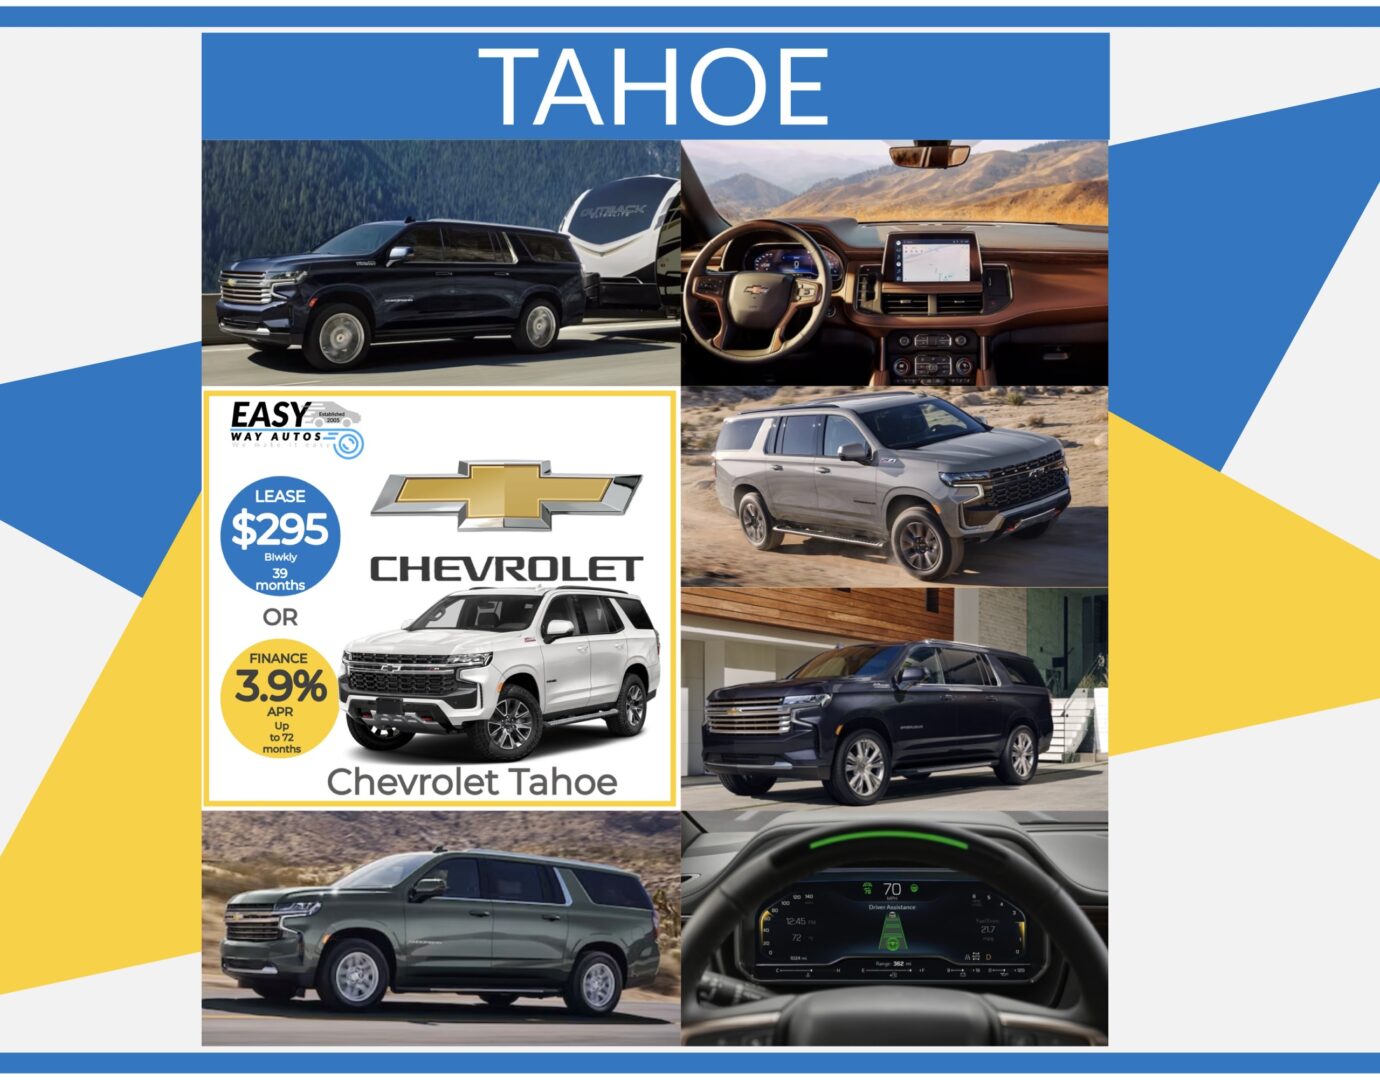 Chevrolet tahoe tahoe chevrolet tahoe chev.